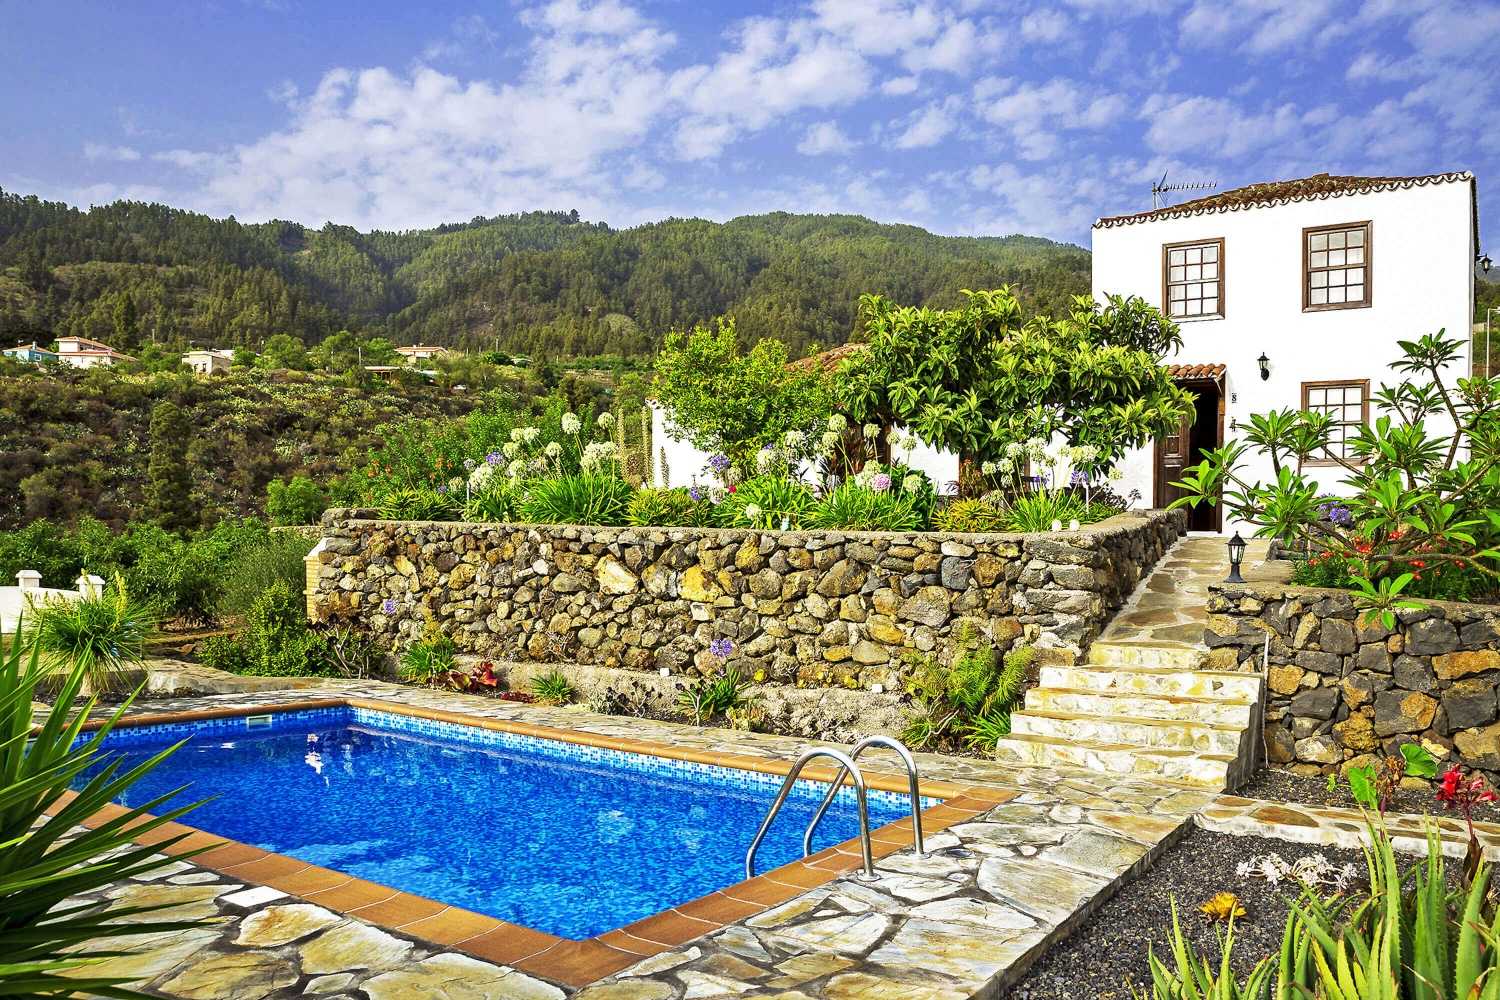 Okouzlující venkovský dům s nádherným výhledem na velký pozemek se zahradami, ovocnými stromy a soukromým bazénem